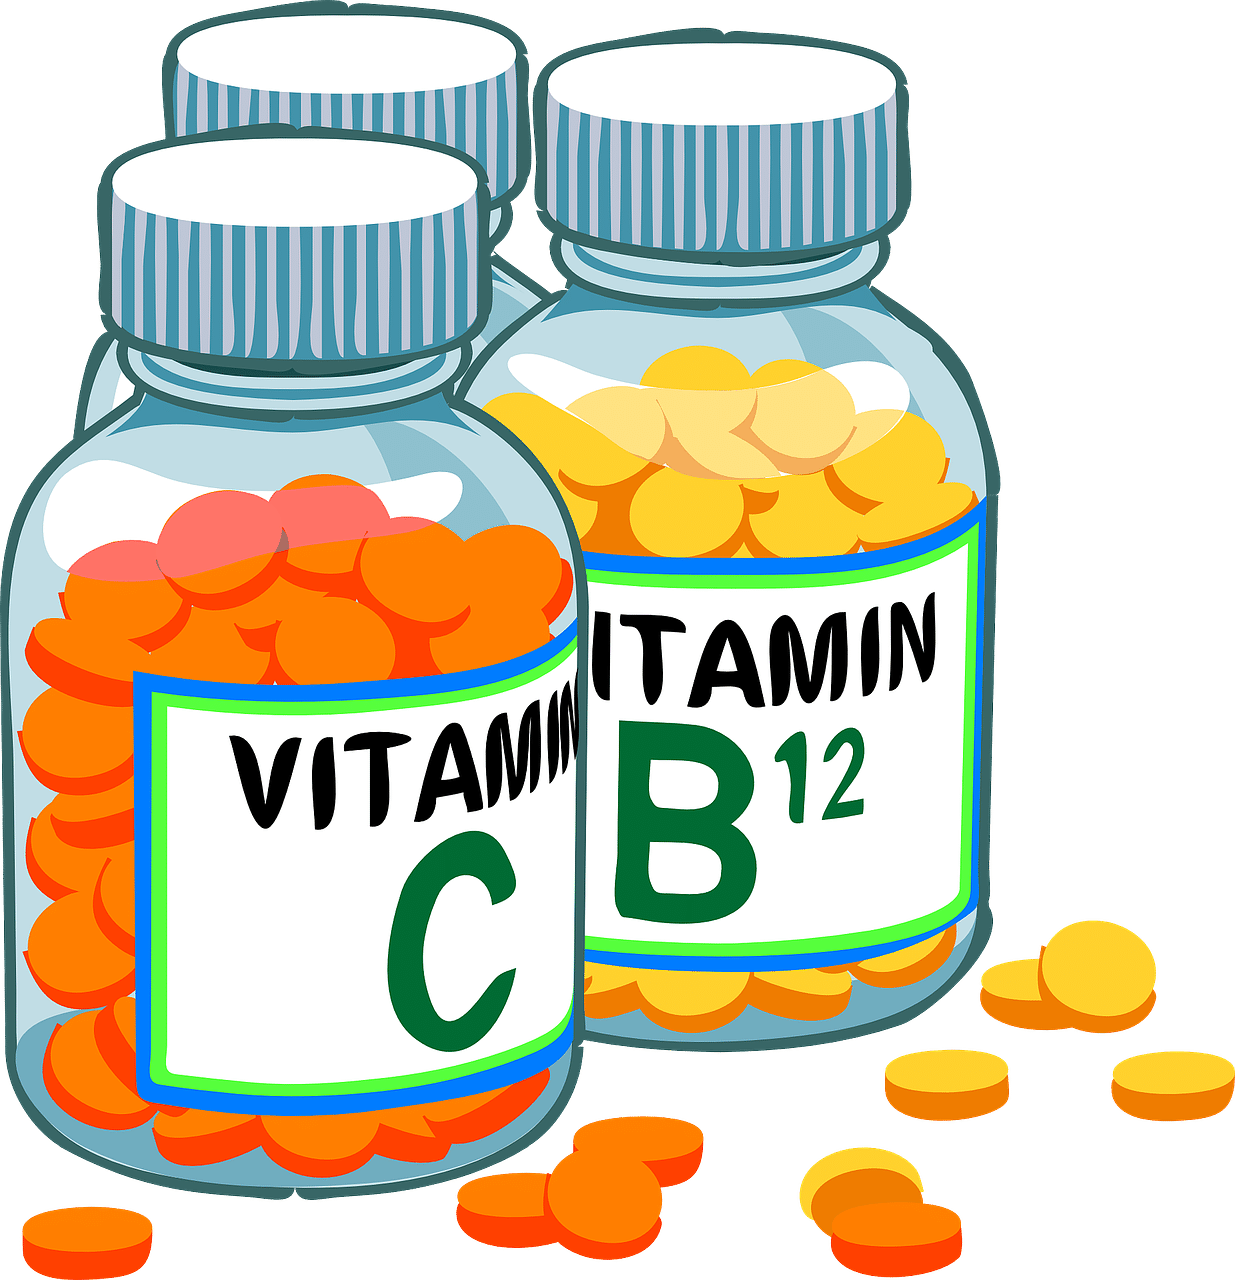 vitamine 1653728673 - Integratori: quanto aspettare per sentire l'effetto